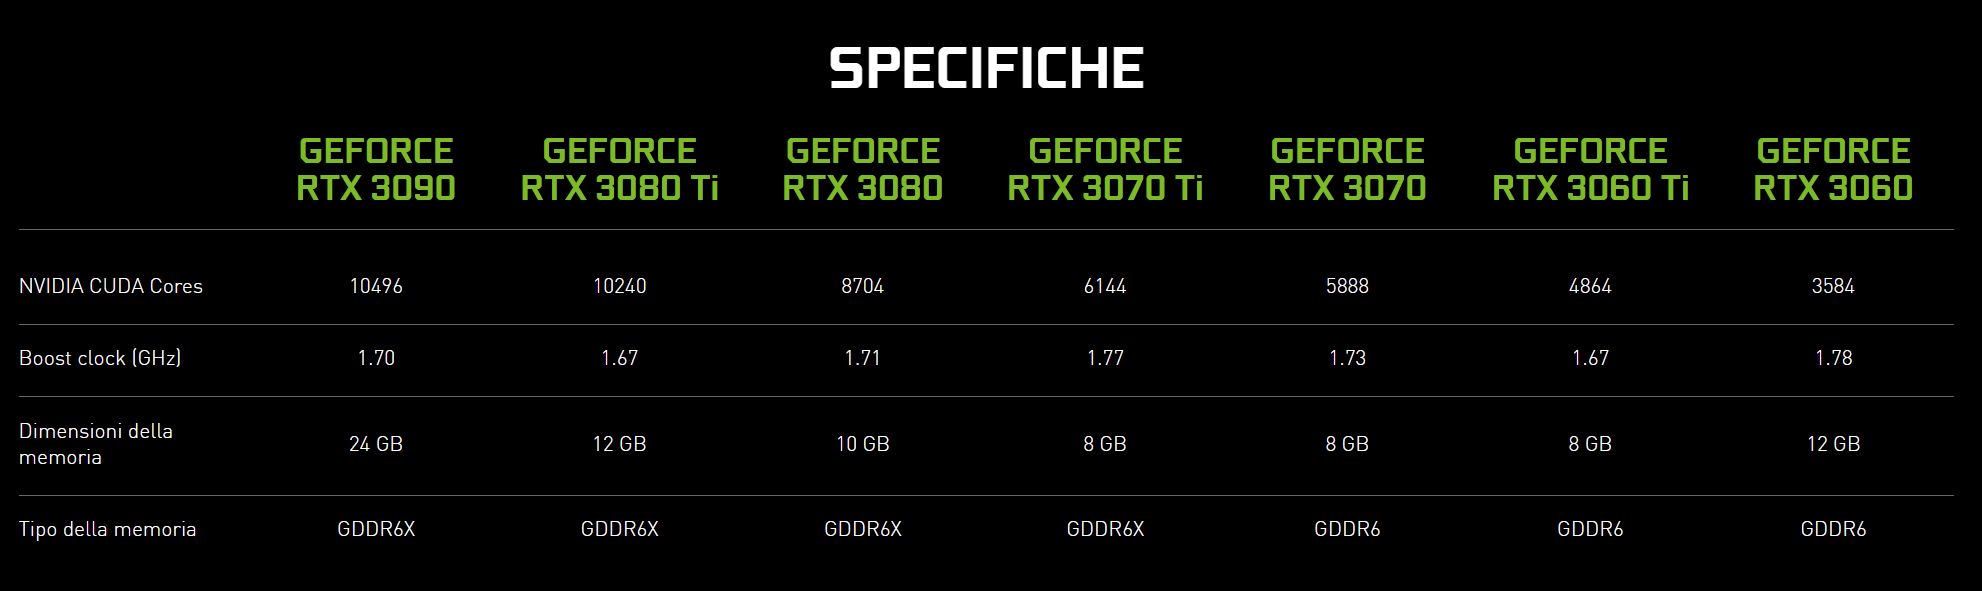 Un confronto tra le varie GeForce RTX Serie 30